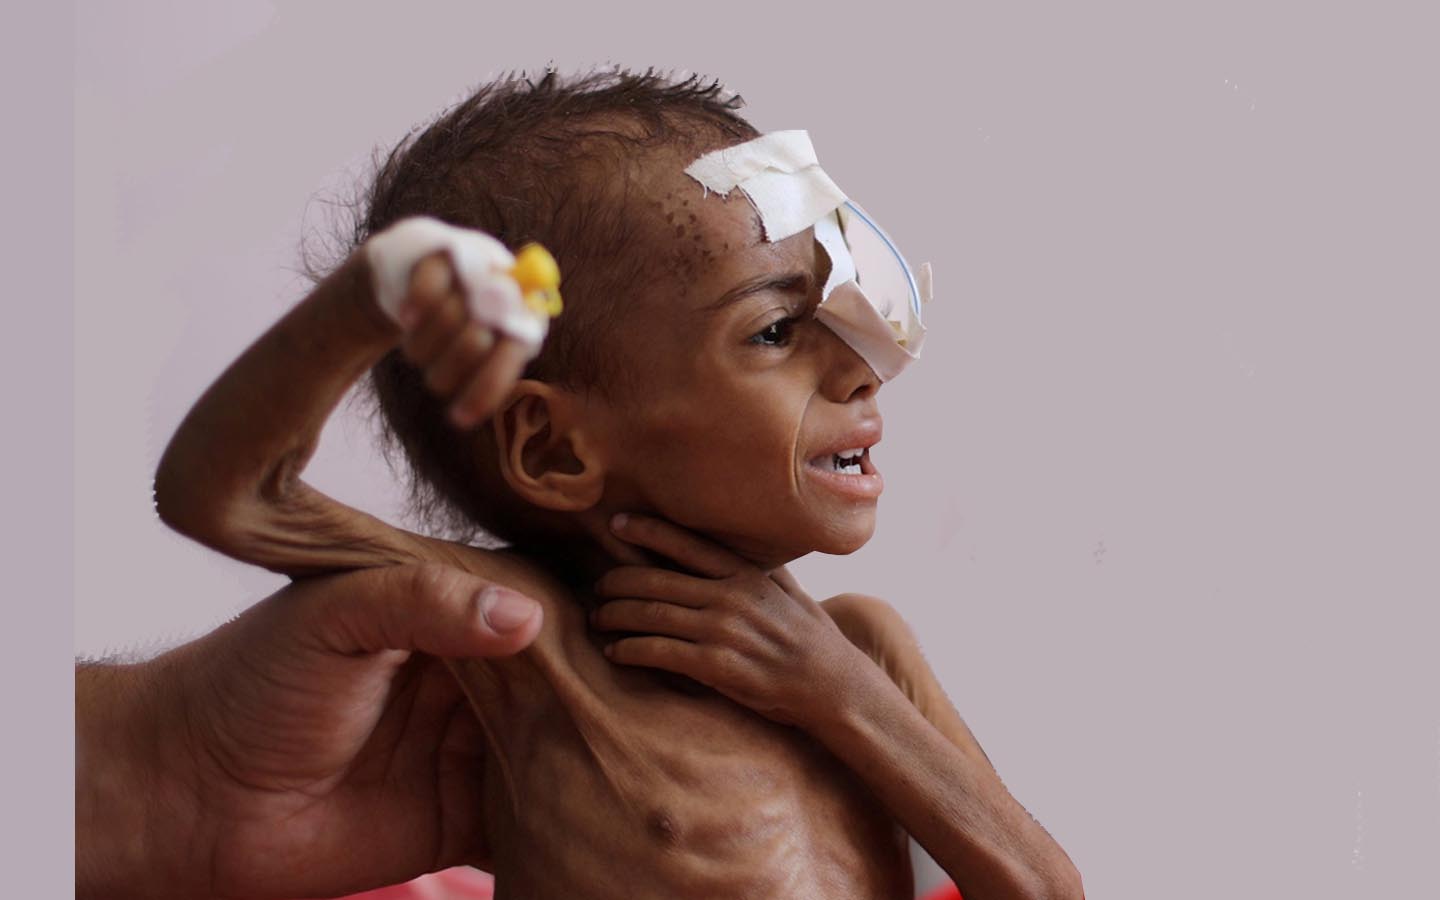 Cerita Jalal Si Penjual Roti: 17 Juta Warga Yaman Berjuang Memberi Makan Diri Sendiri